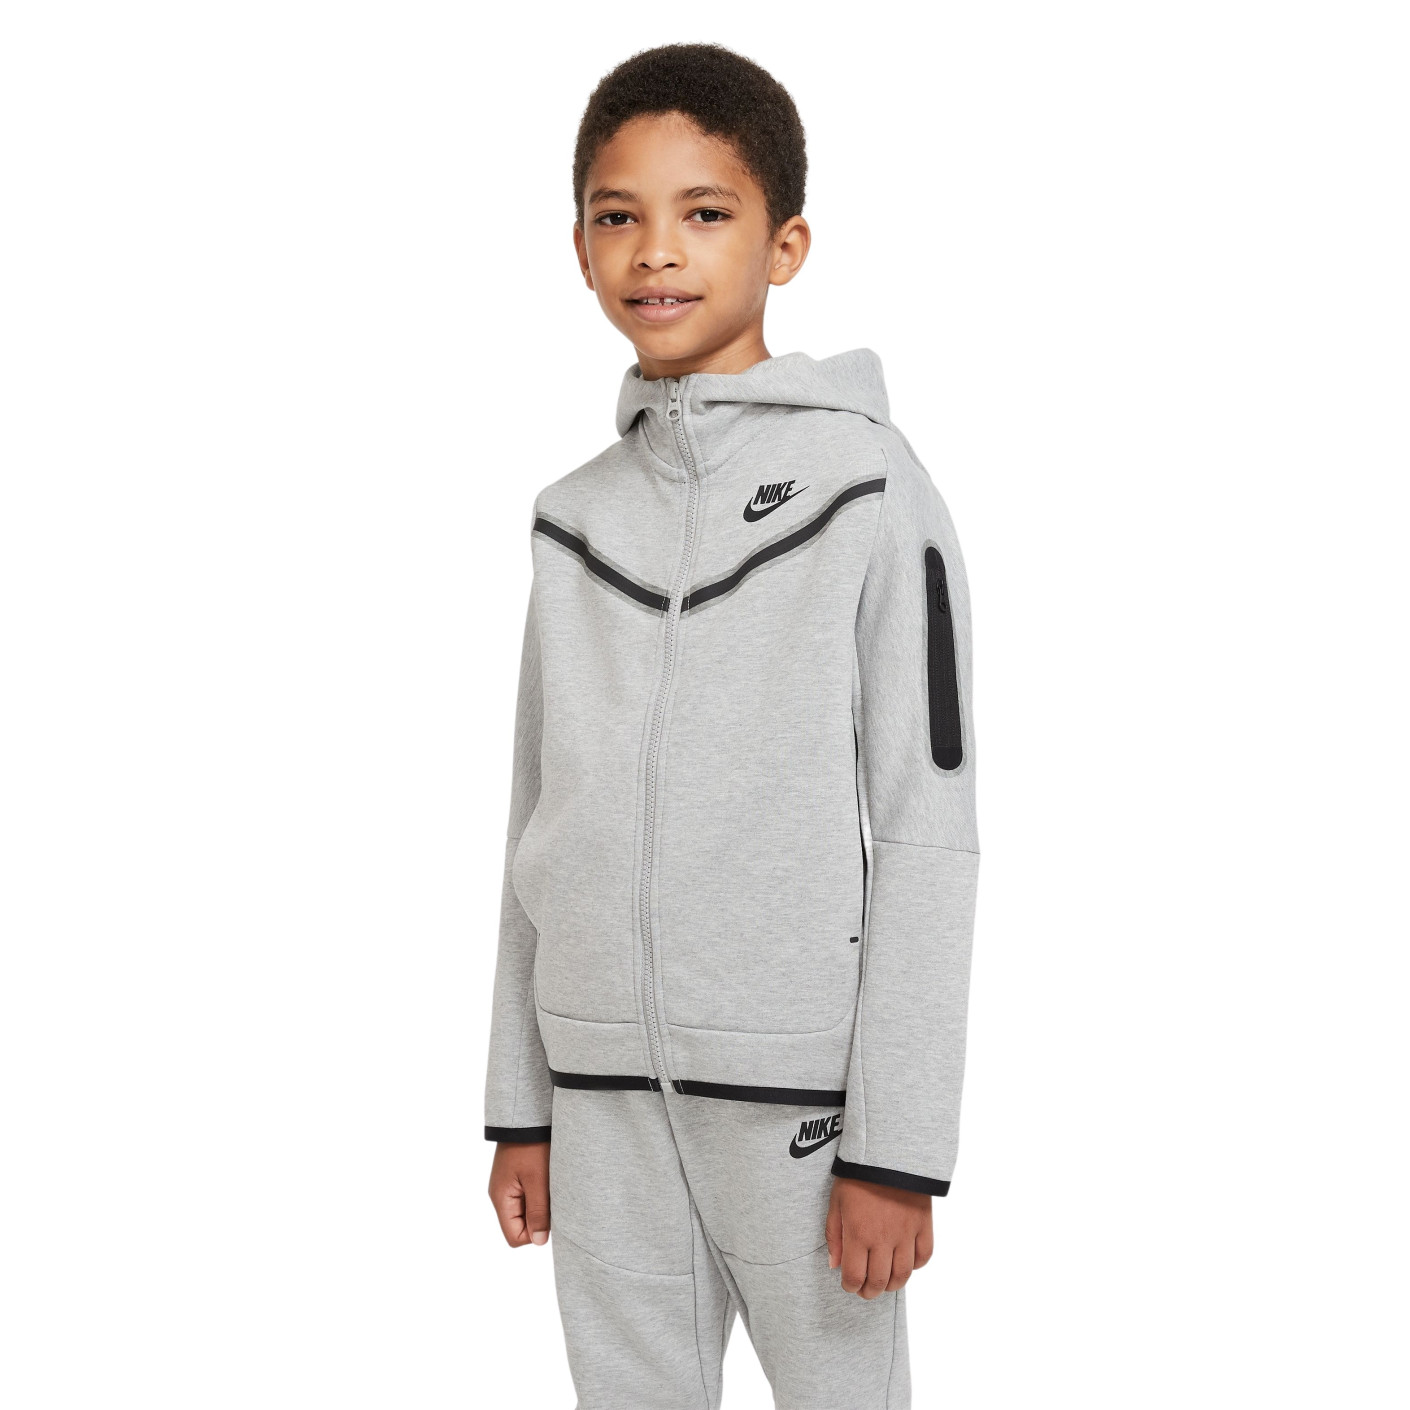 Vuil Verbazing galop Nike Tech Fleece Vest Kids Grey - KNVBshop.nl